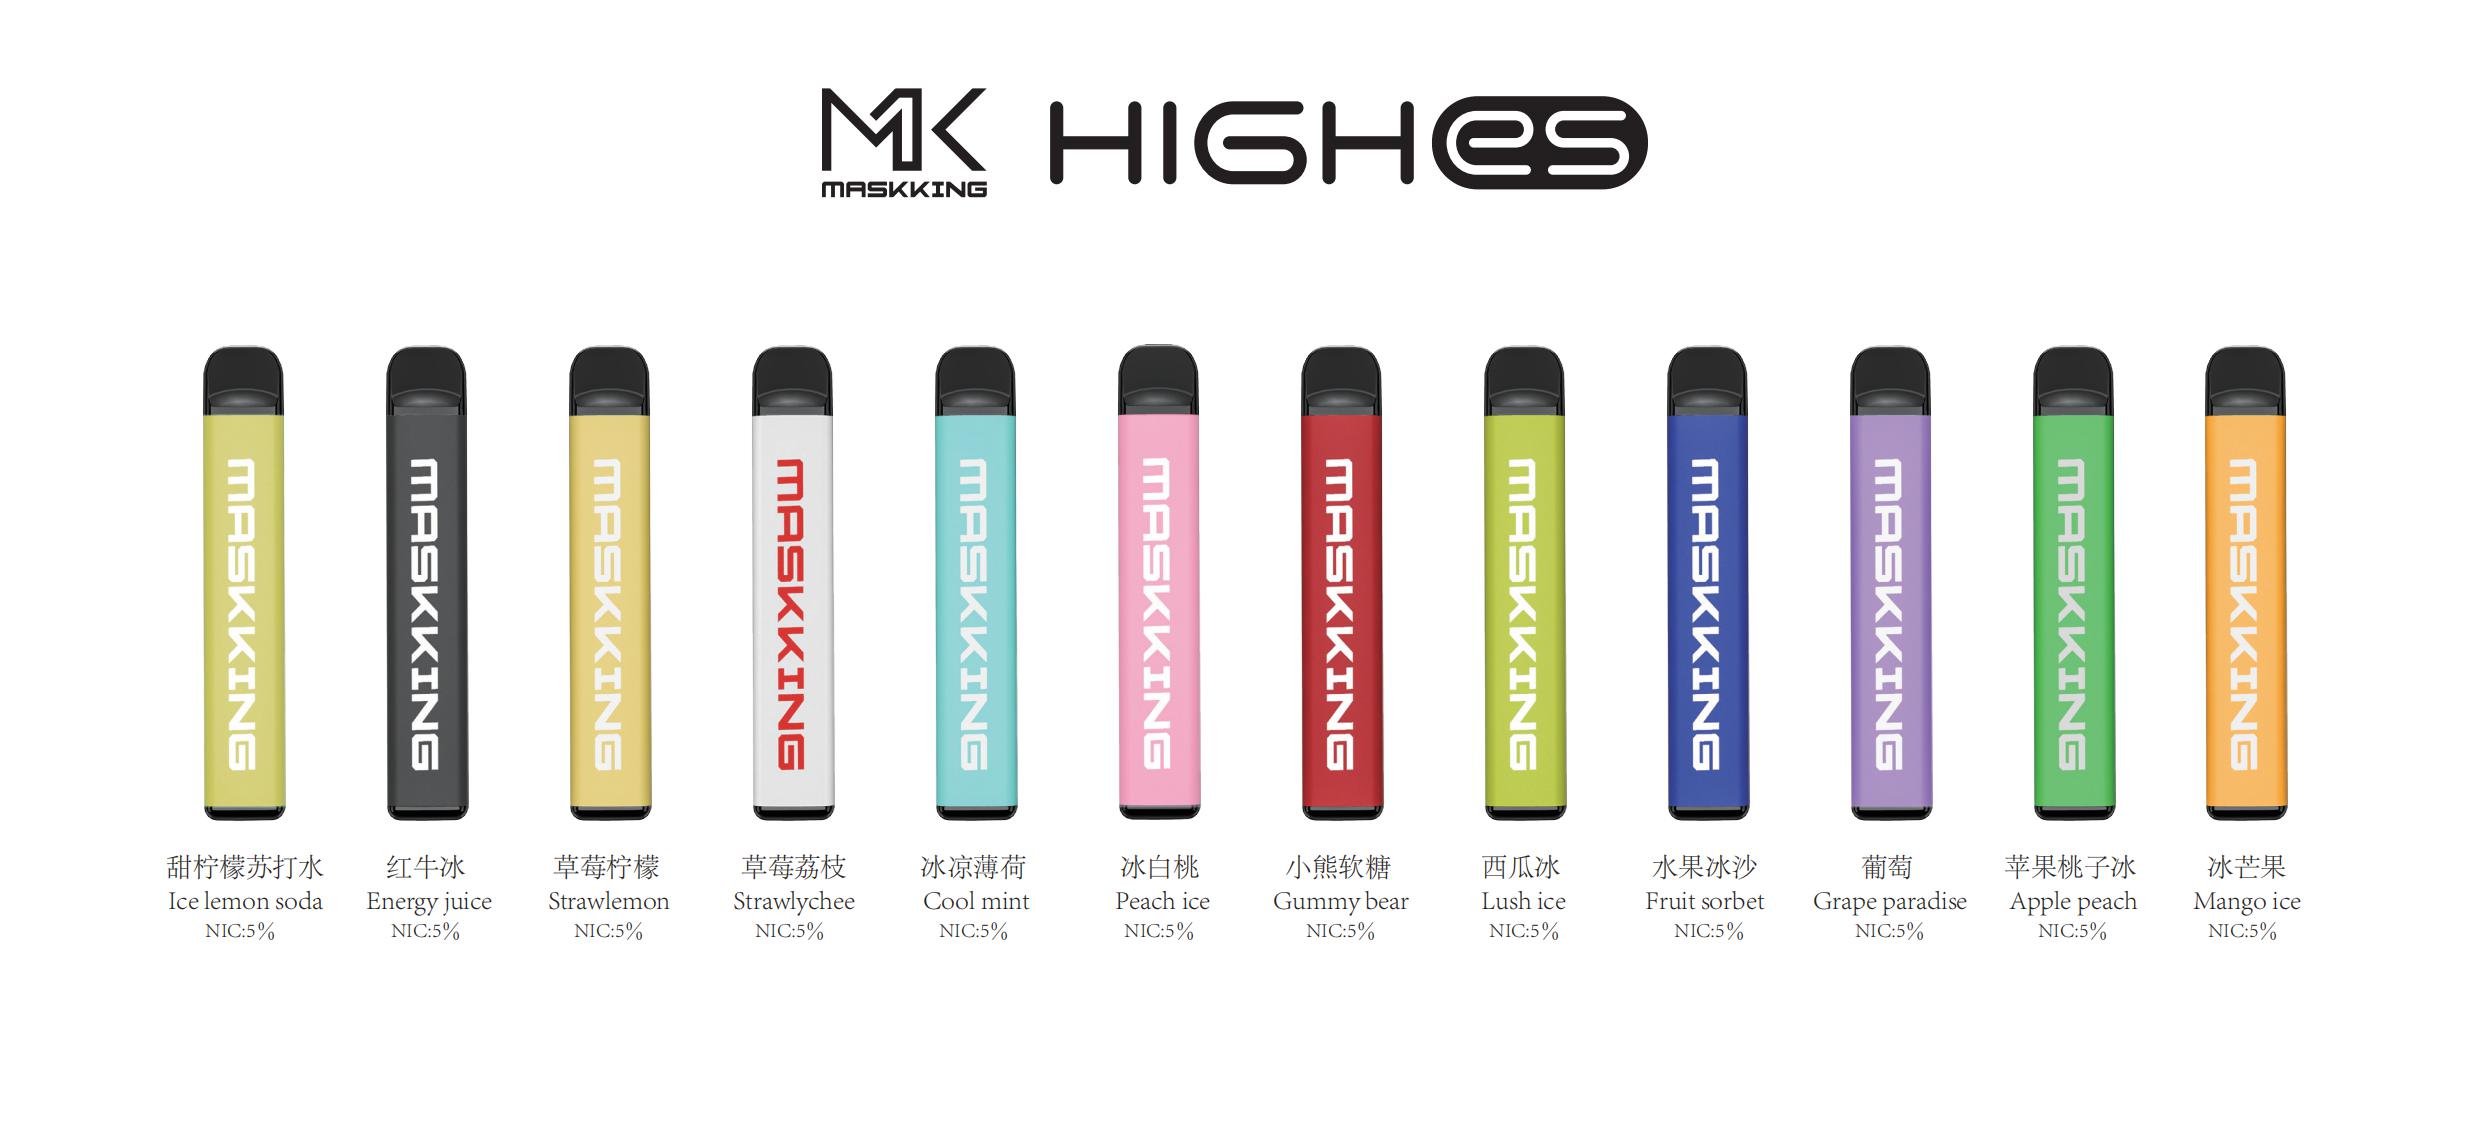 Maskking High ES 450+Puffs heiße E-Zigarette